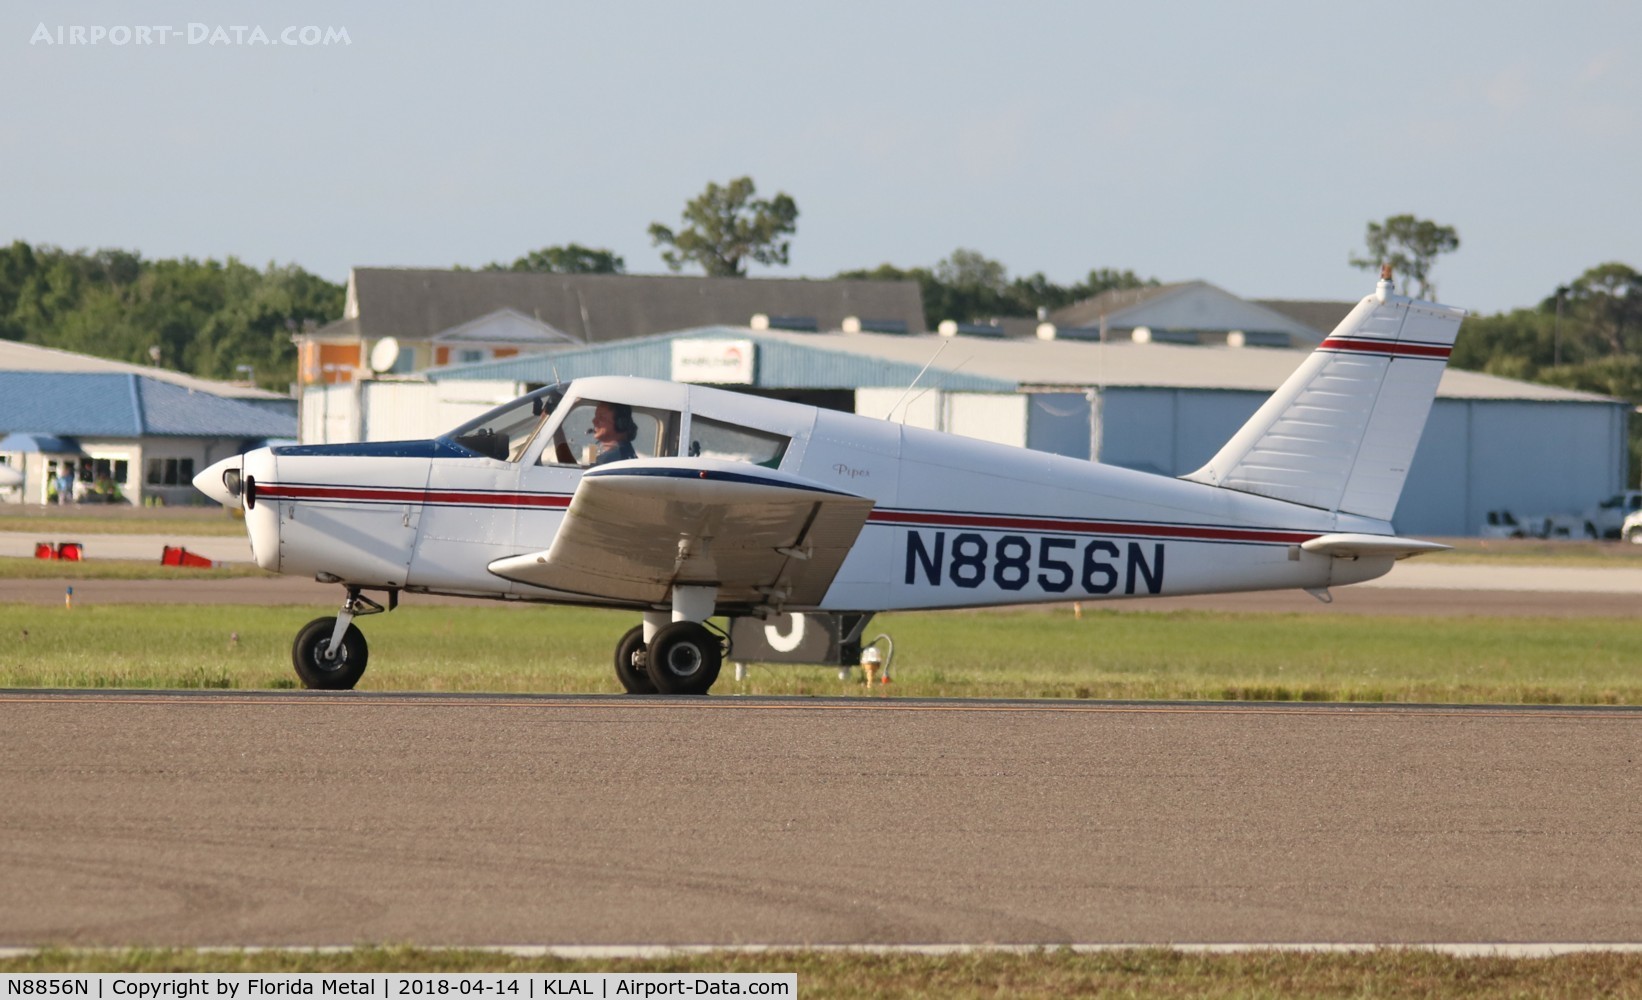 N8856N, 1969 Piper PA-28-140 C/N 28-25711, PA-28-140